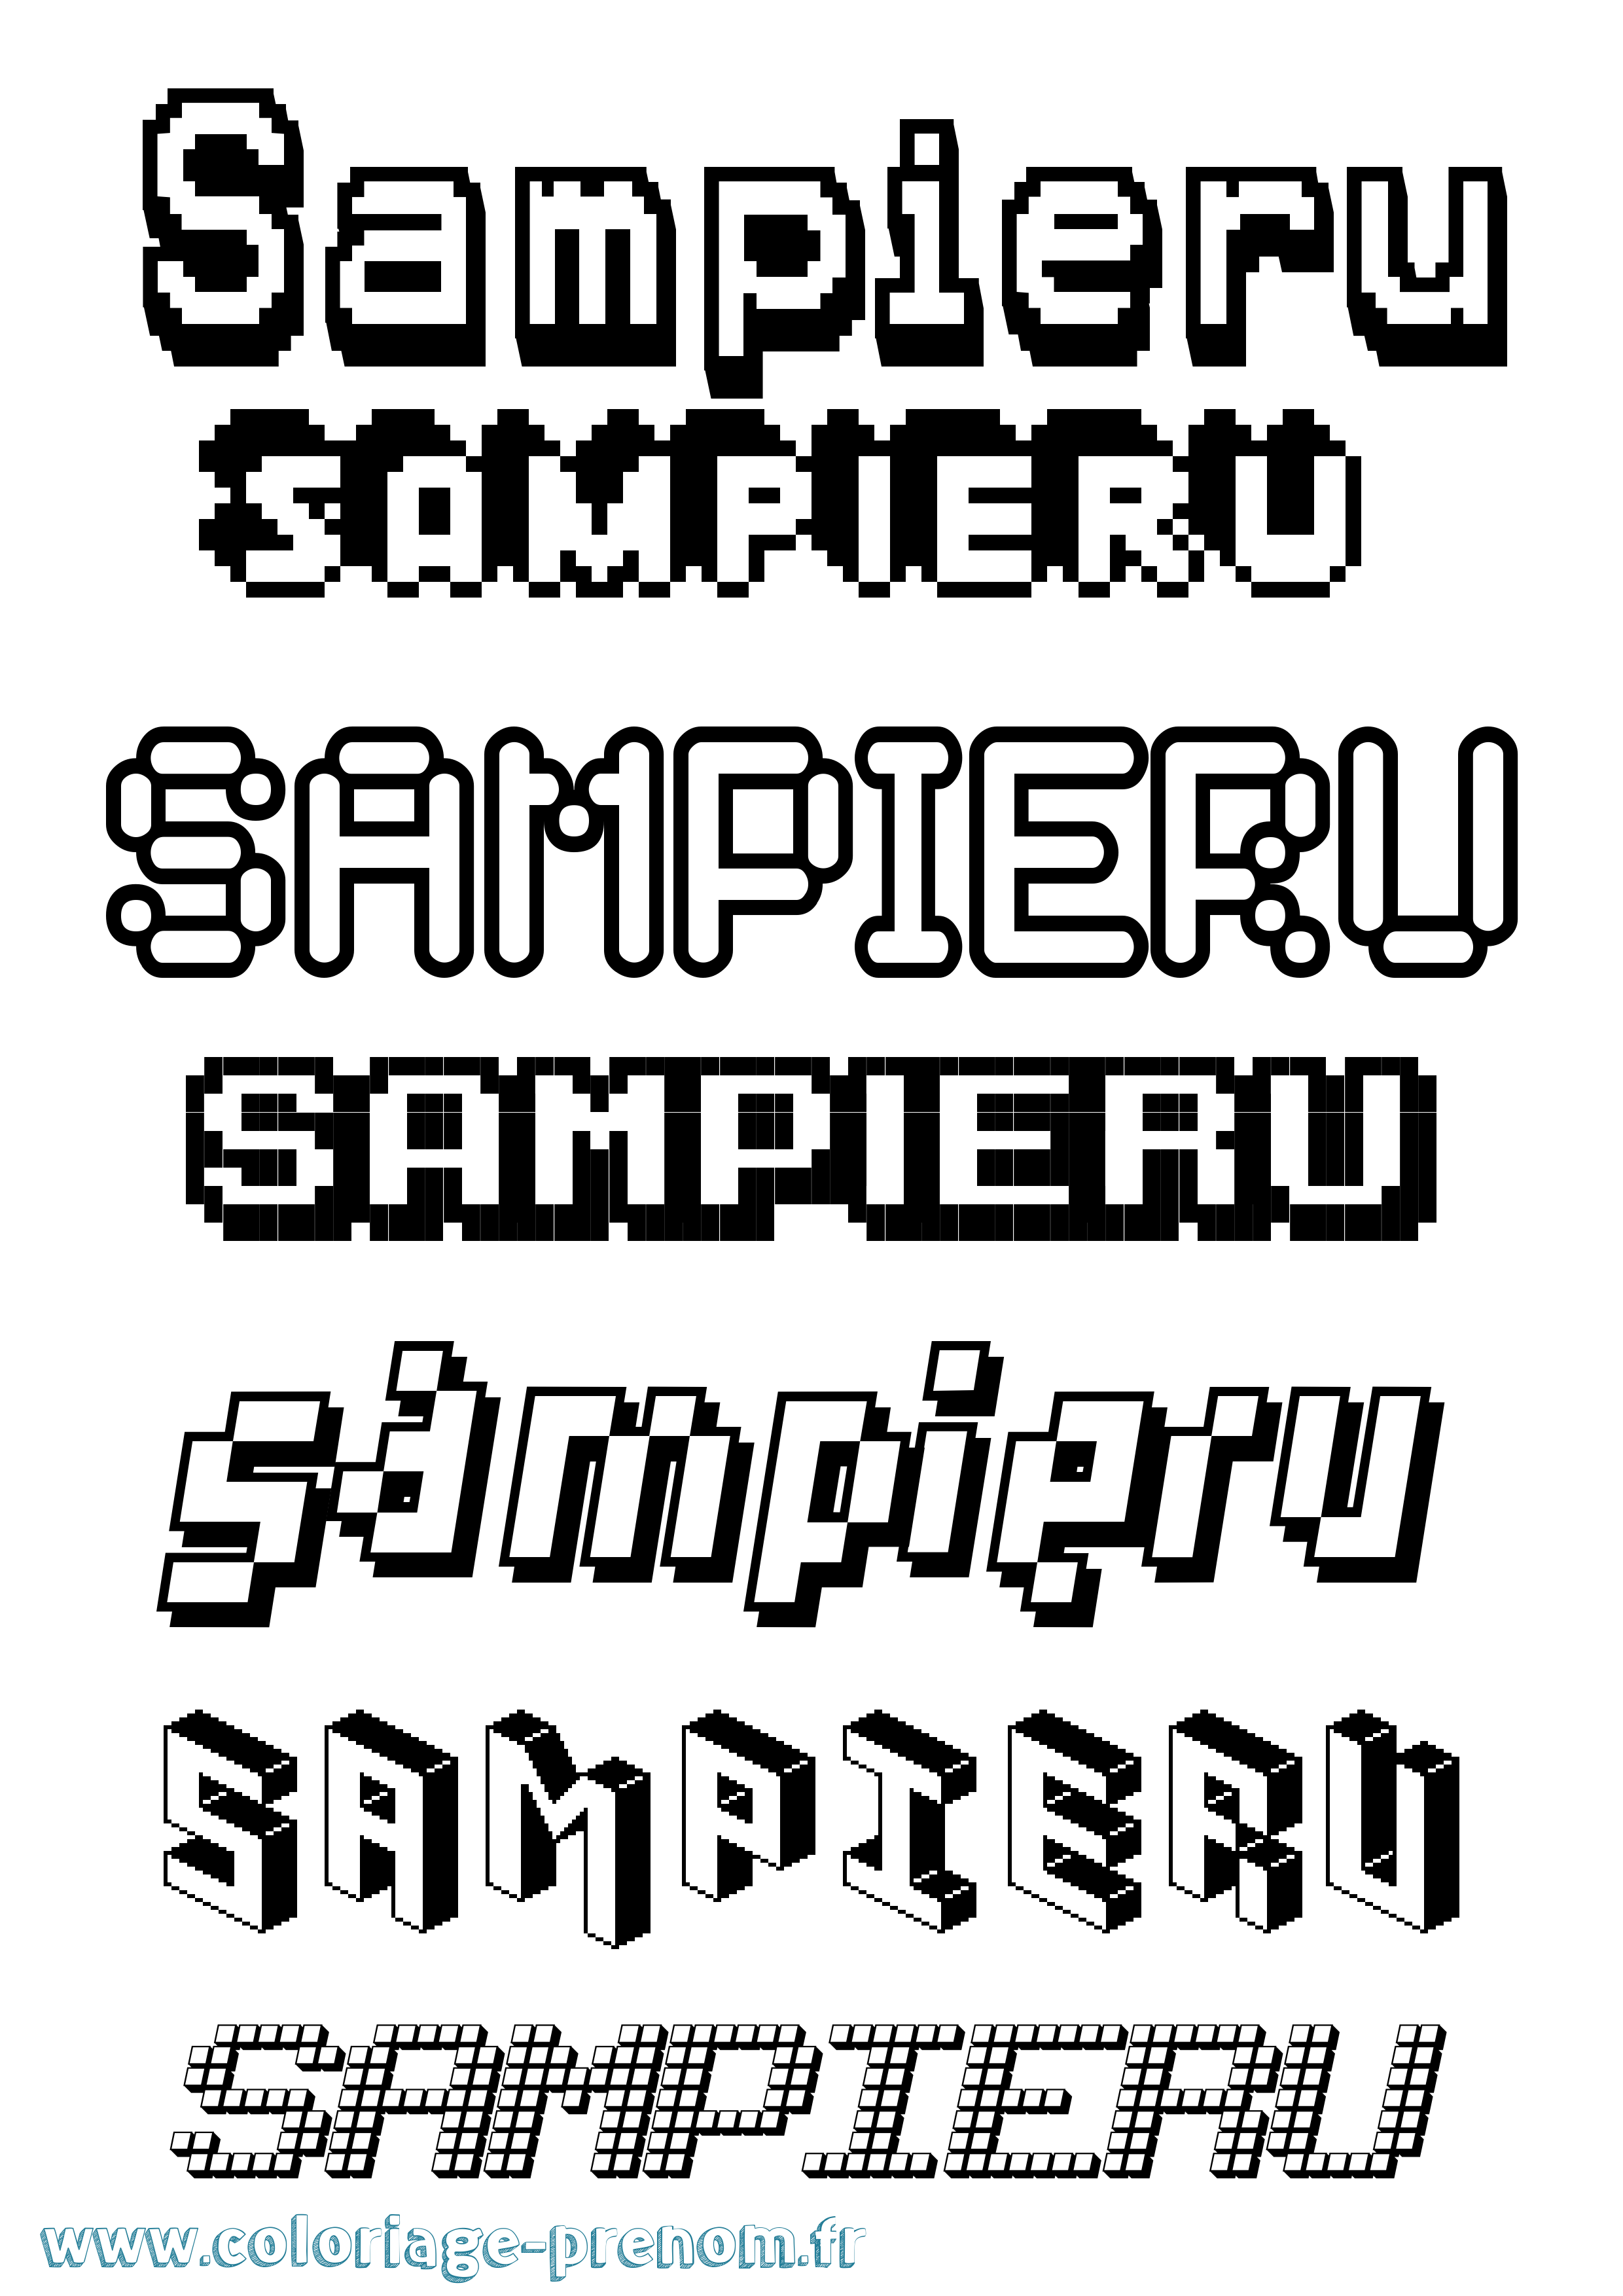 Coloriage prénom Sampieru Pixel